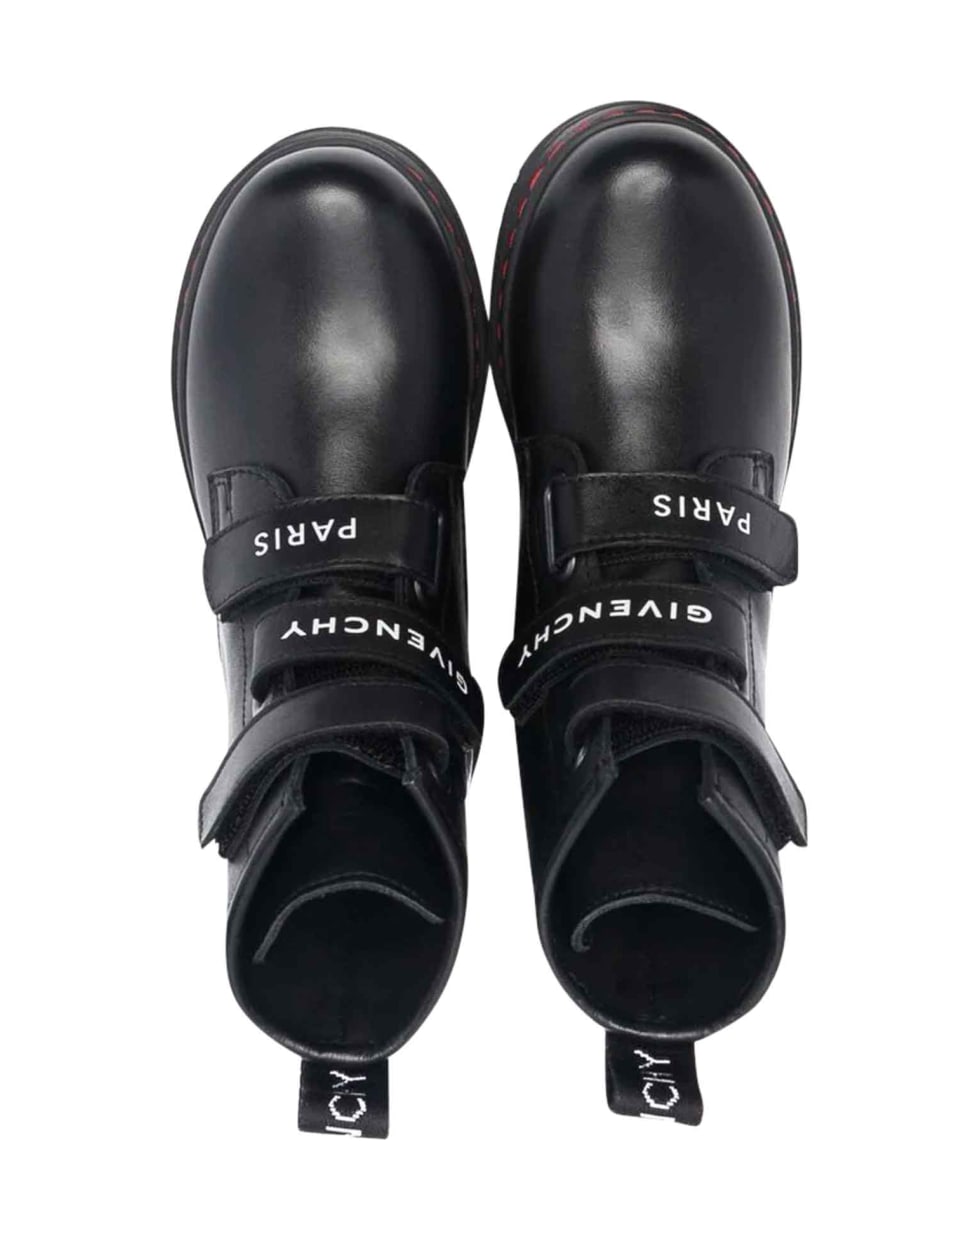 Givenchy Unisex Black Combat Boots - Nero